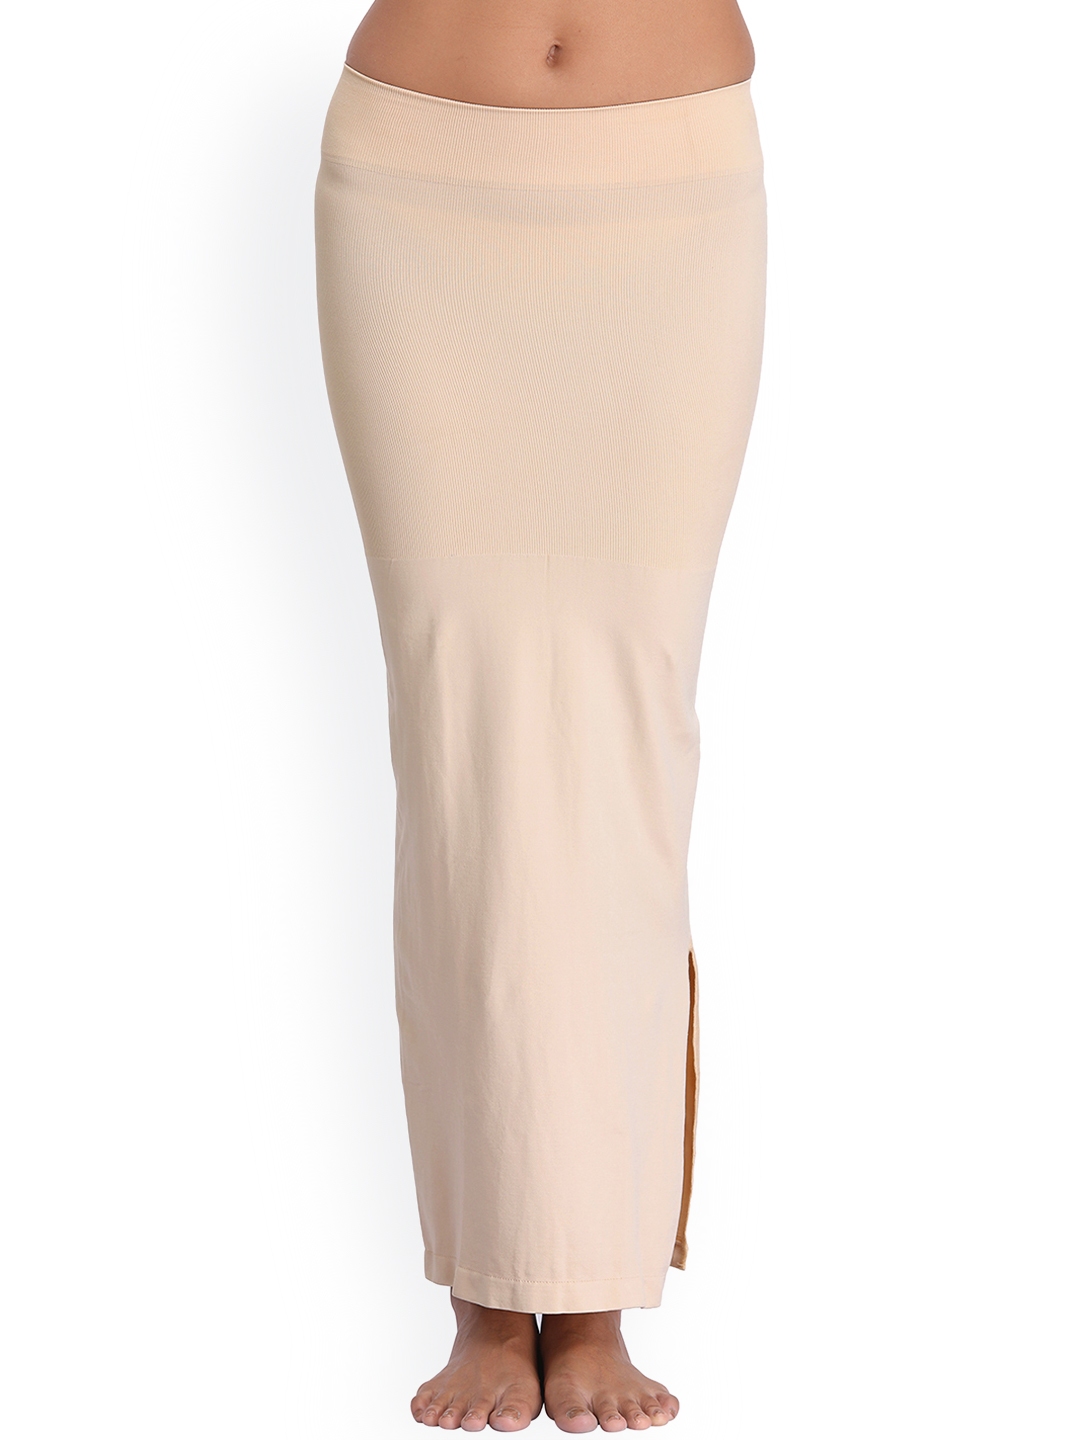 White Saree Shapewear with side slit & mermaid shape